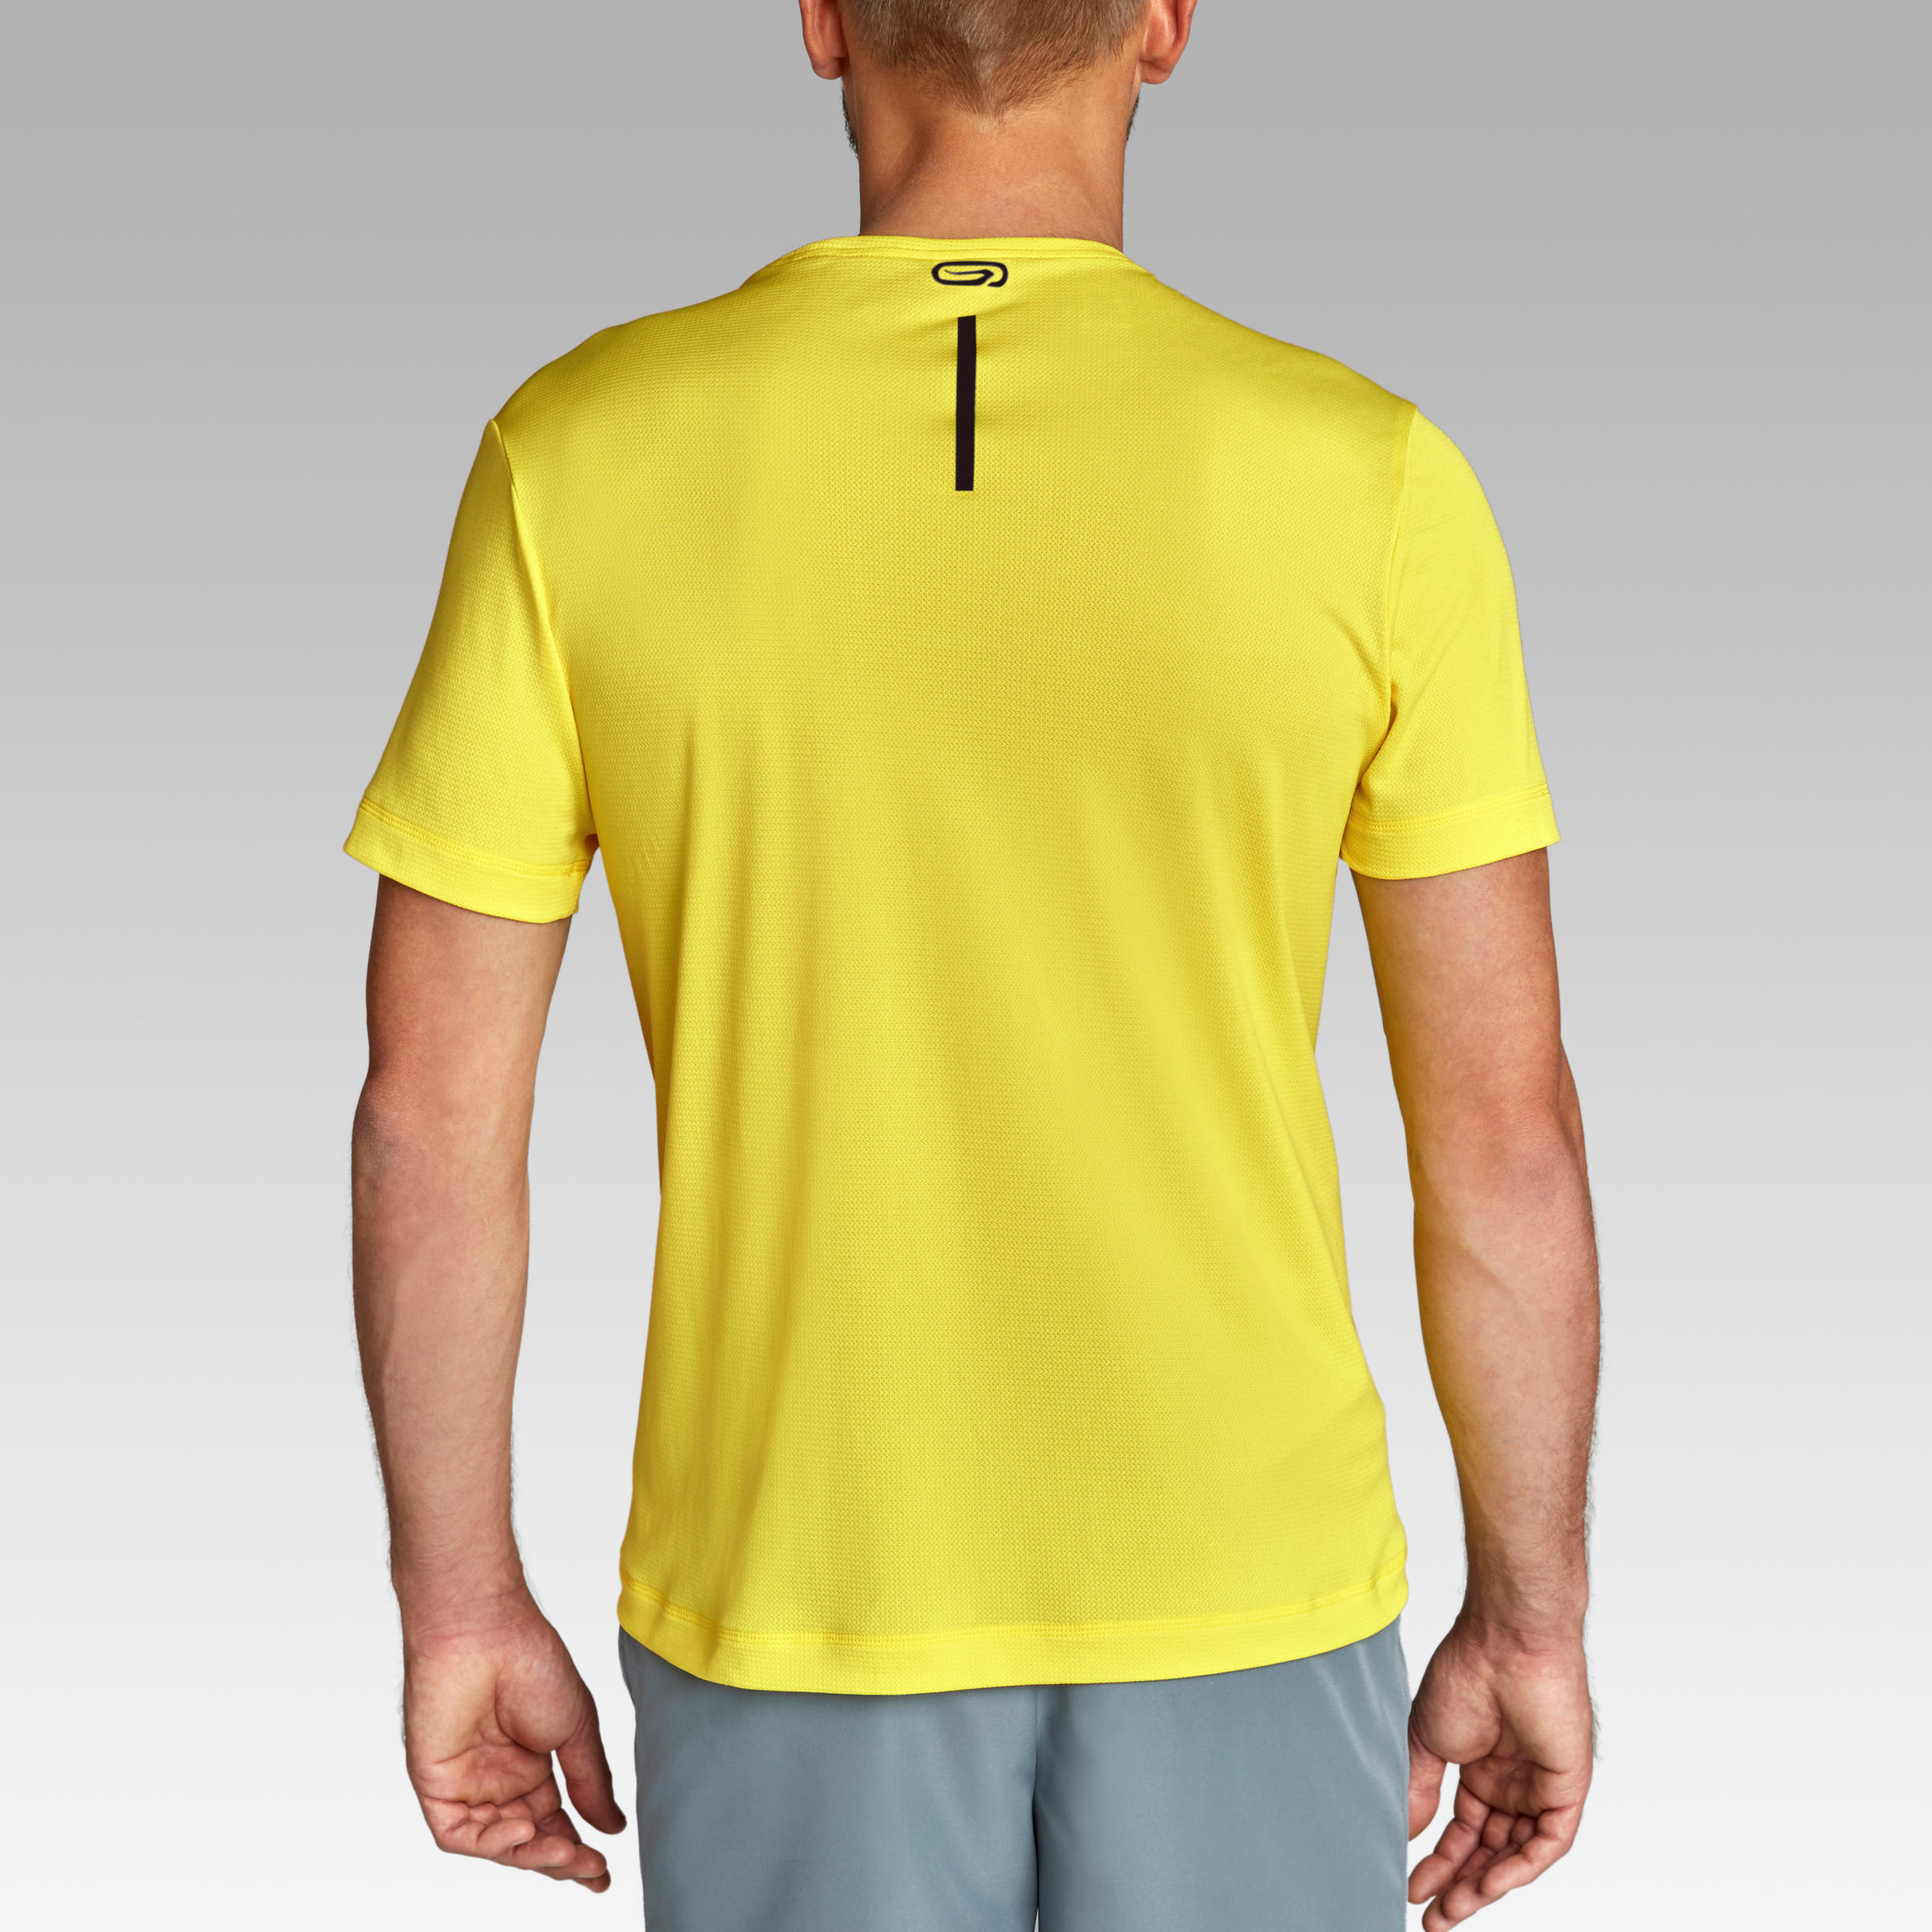 Dry Men's Breathable Running T-Shirt - Lemon Yellow 4/7